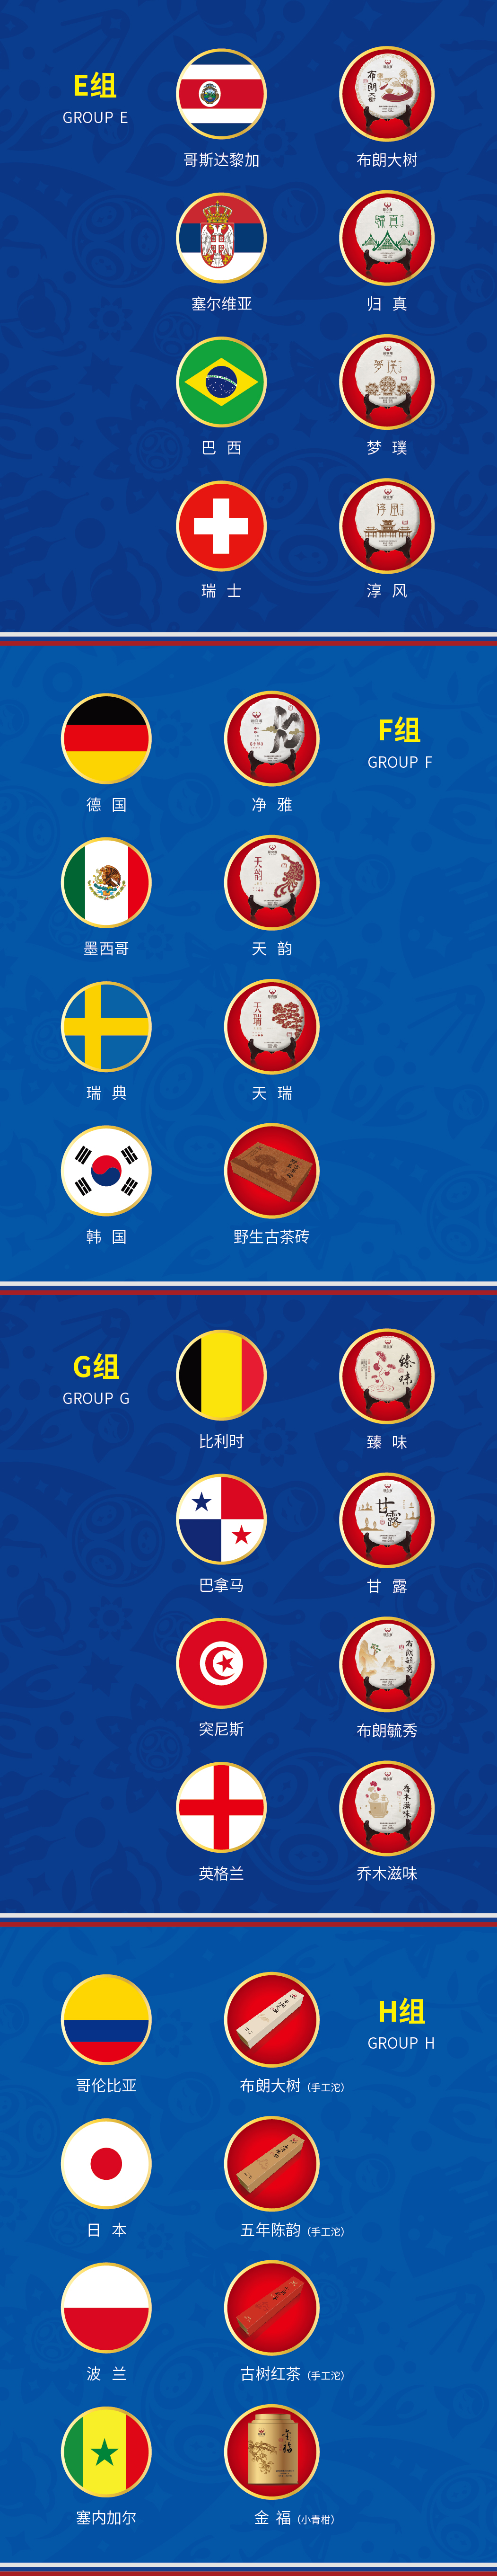 福安隆Hi，世界杯32支球队，真巧，我们刚好32款茶！配图